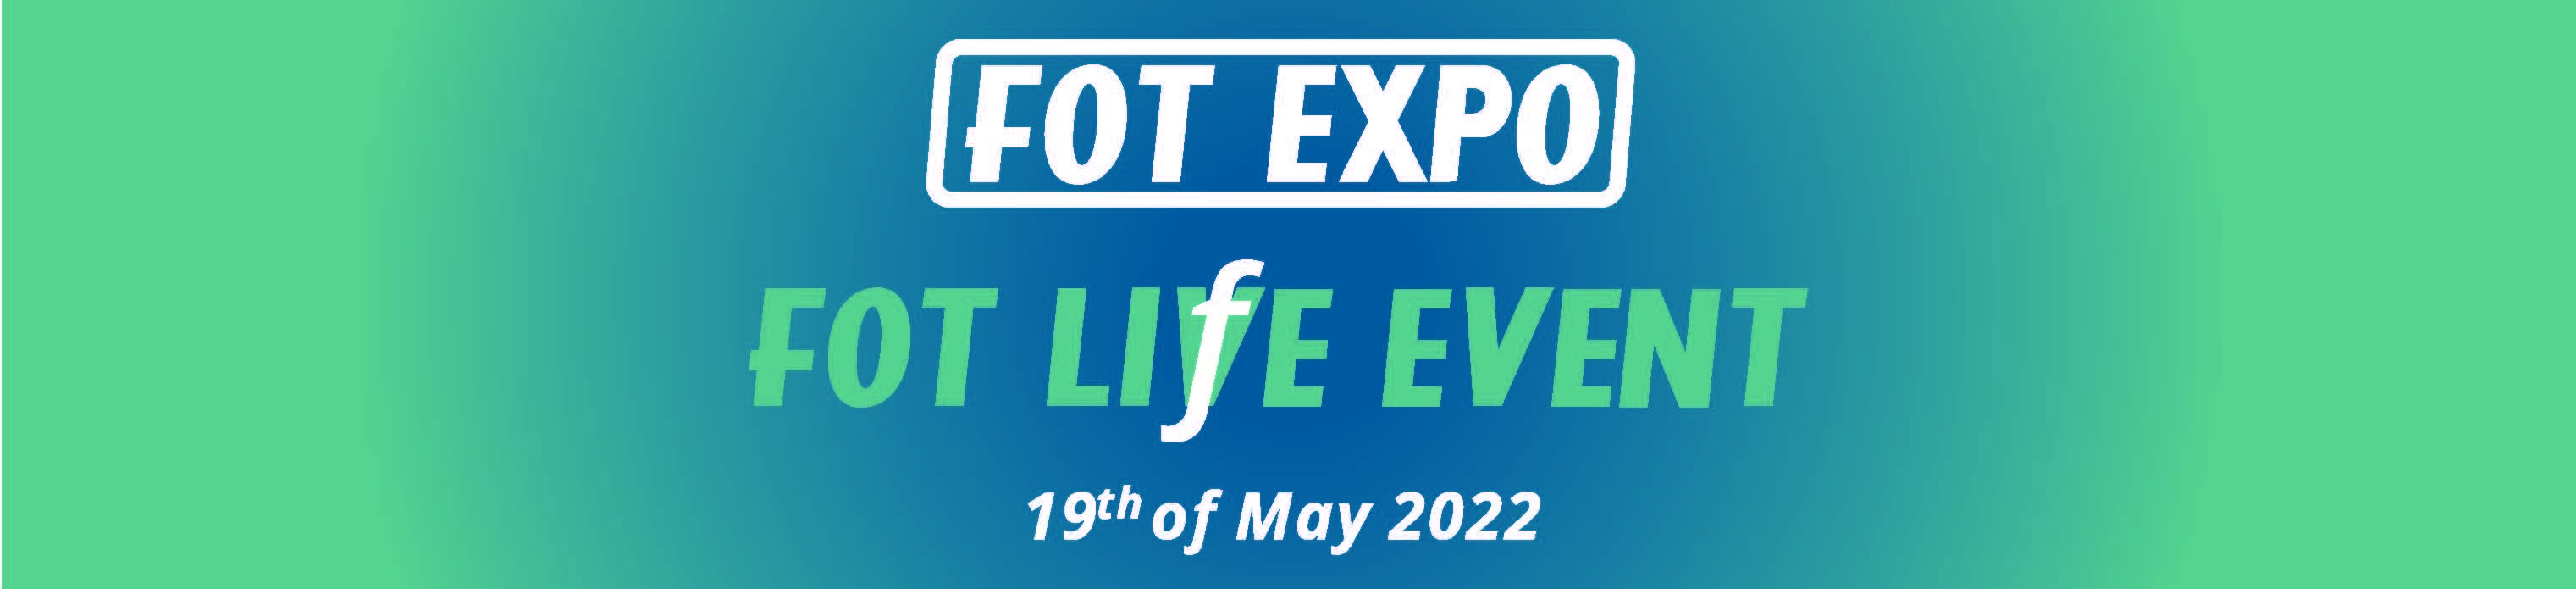 Снимки от изложението FOT EXPO - Life Event, Hotel Milleniumn - Sofia, 19.05.2022